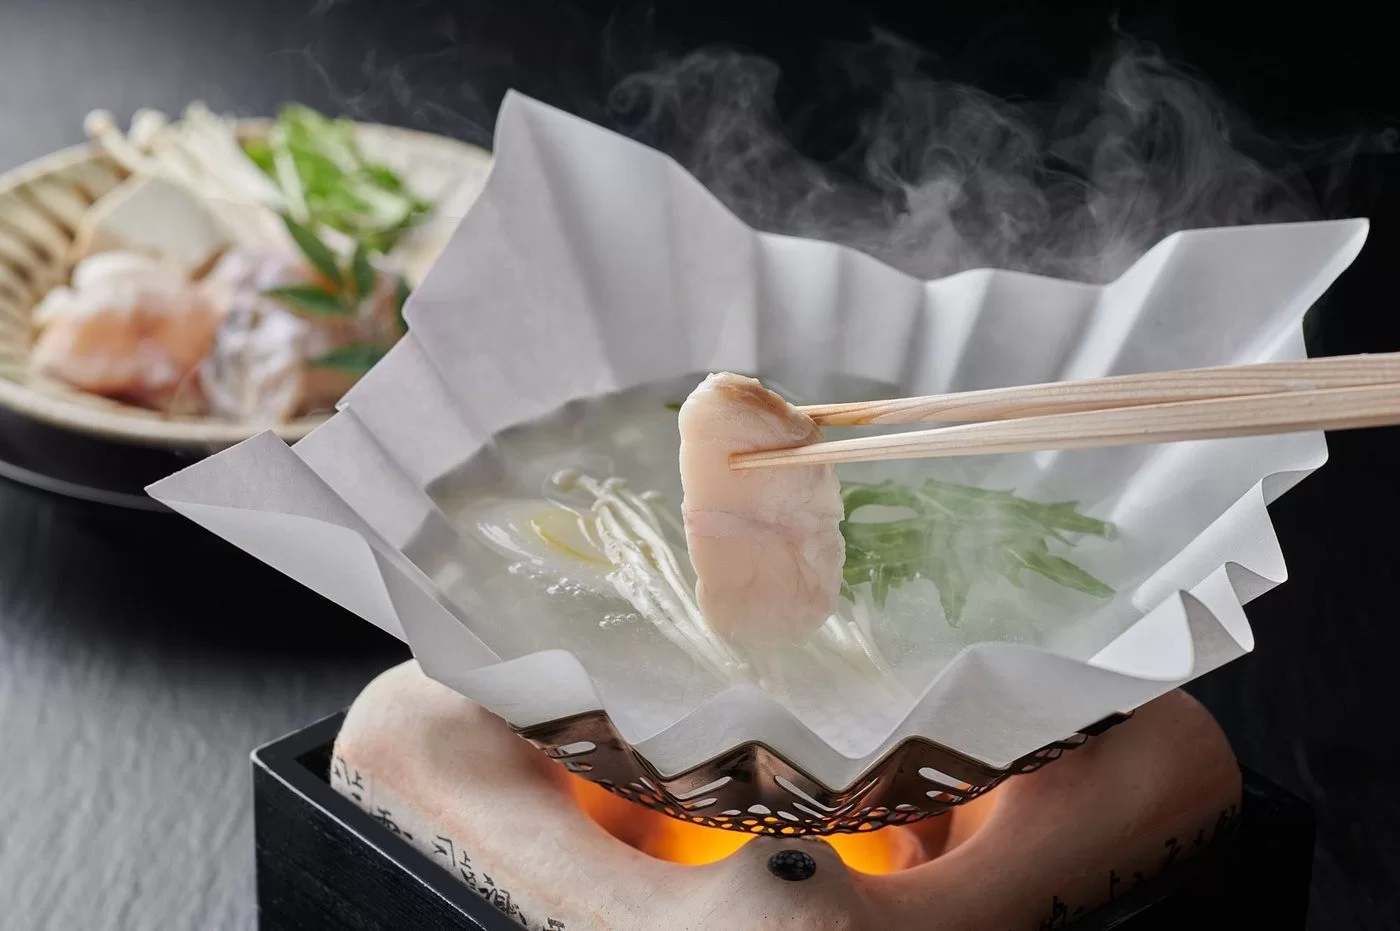 Độc lạ món lẩu giấy Nhật Bản khách vừa ăn vừa sợ cháy nồi